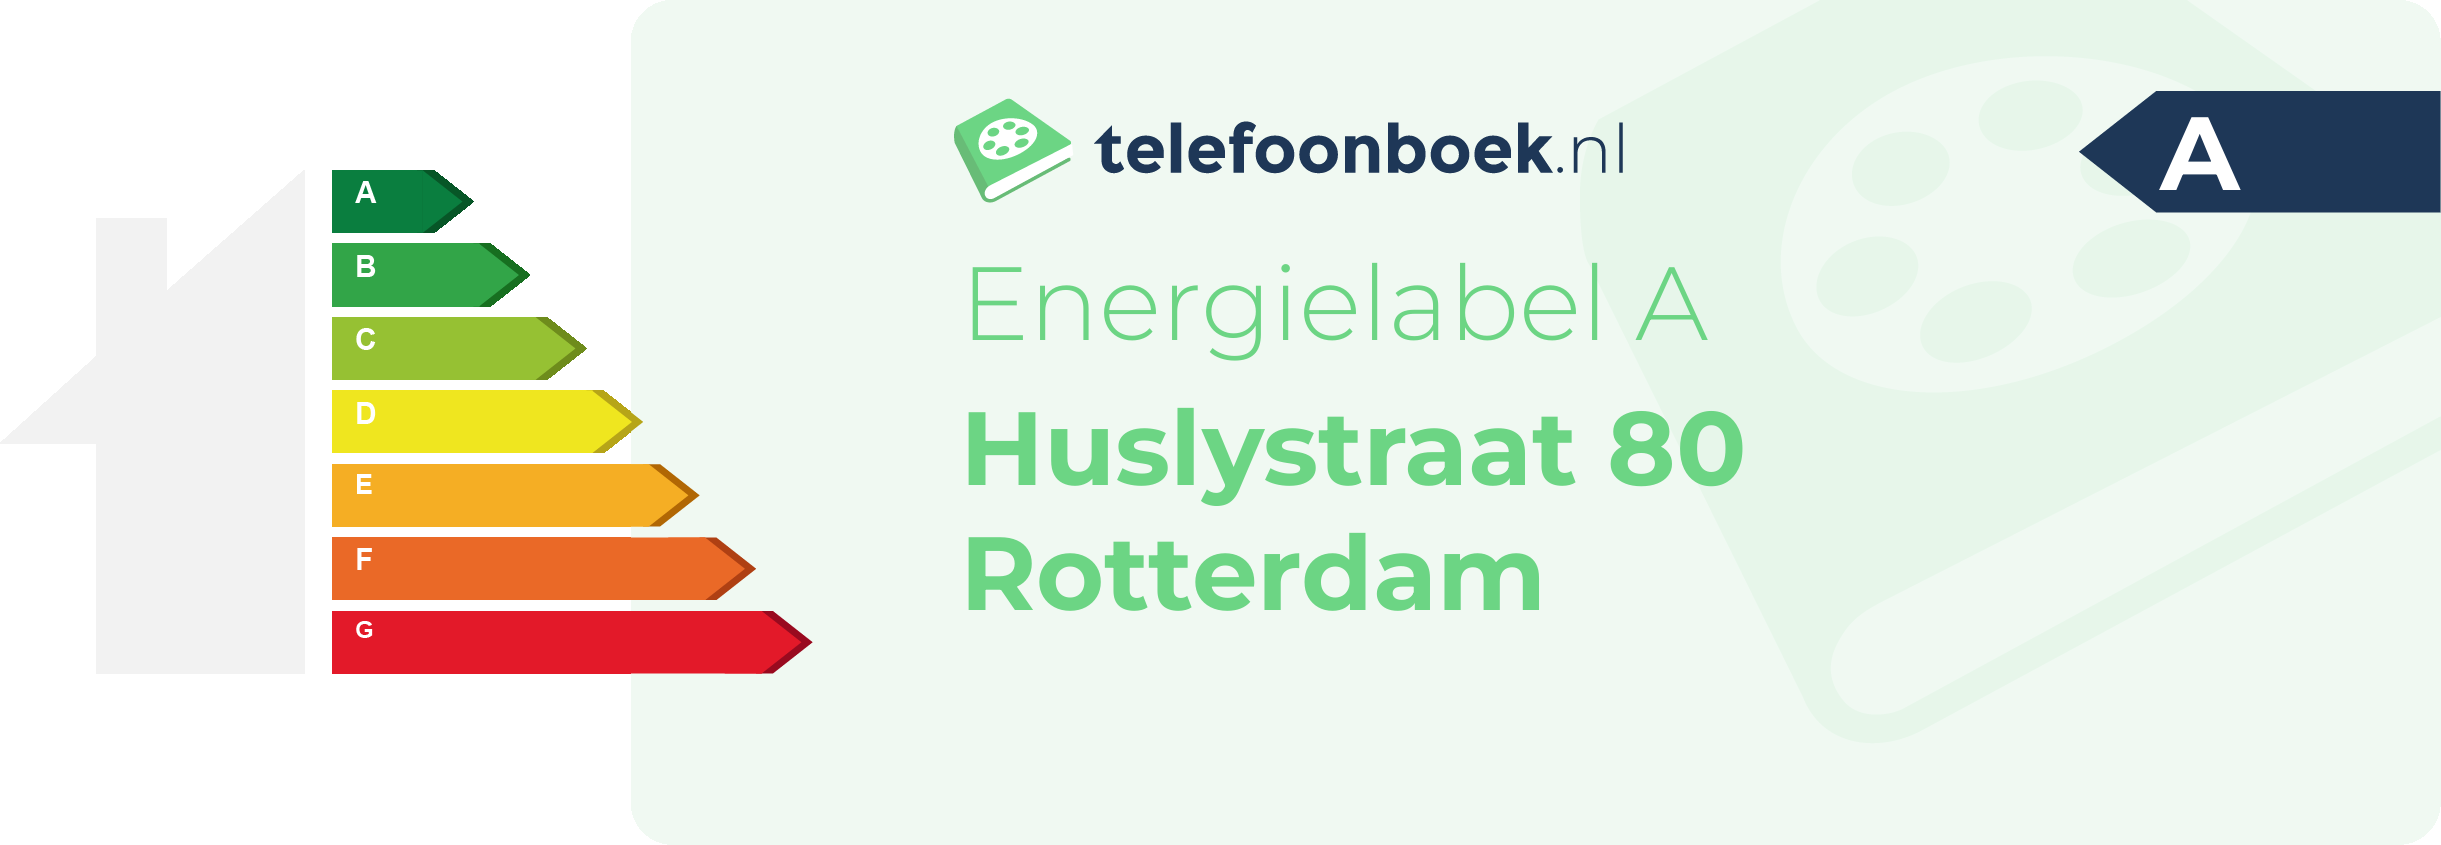 Energielabel Huslystraat 80 Rotterdam